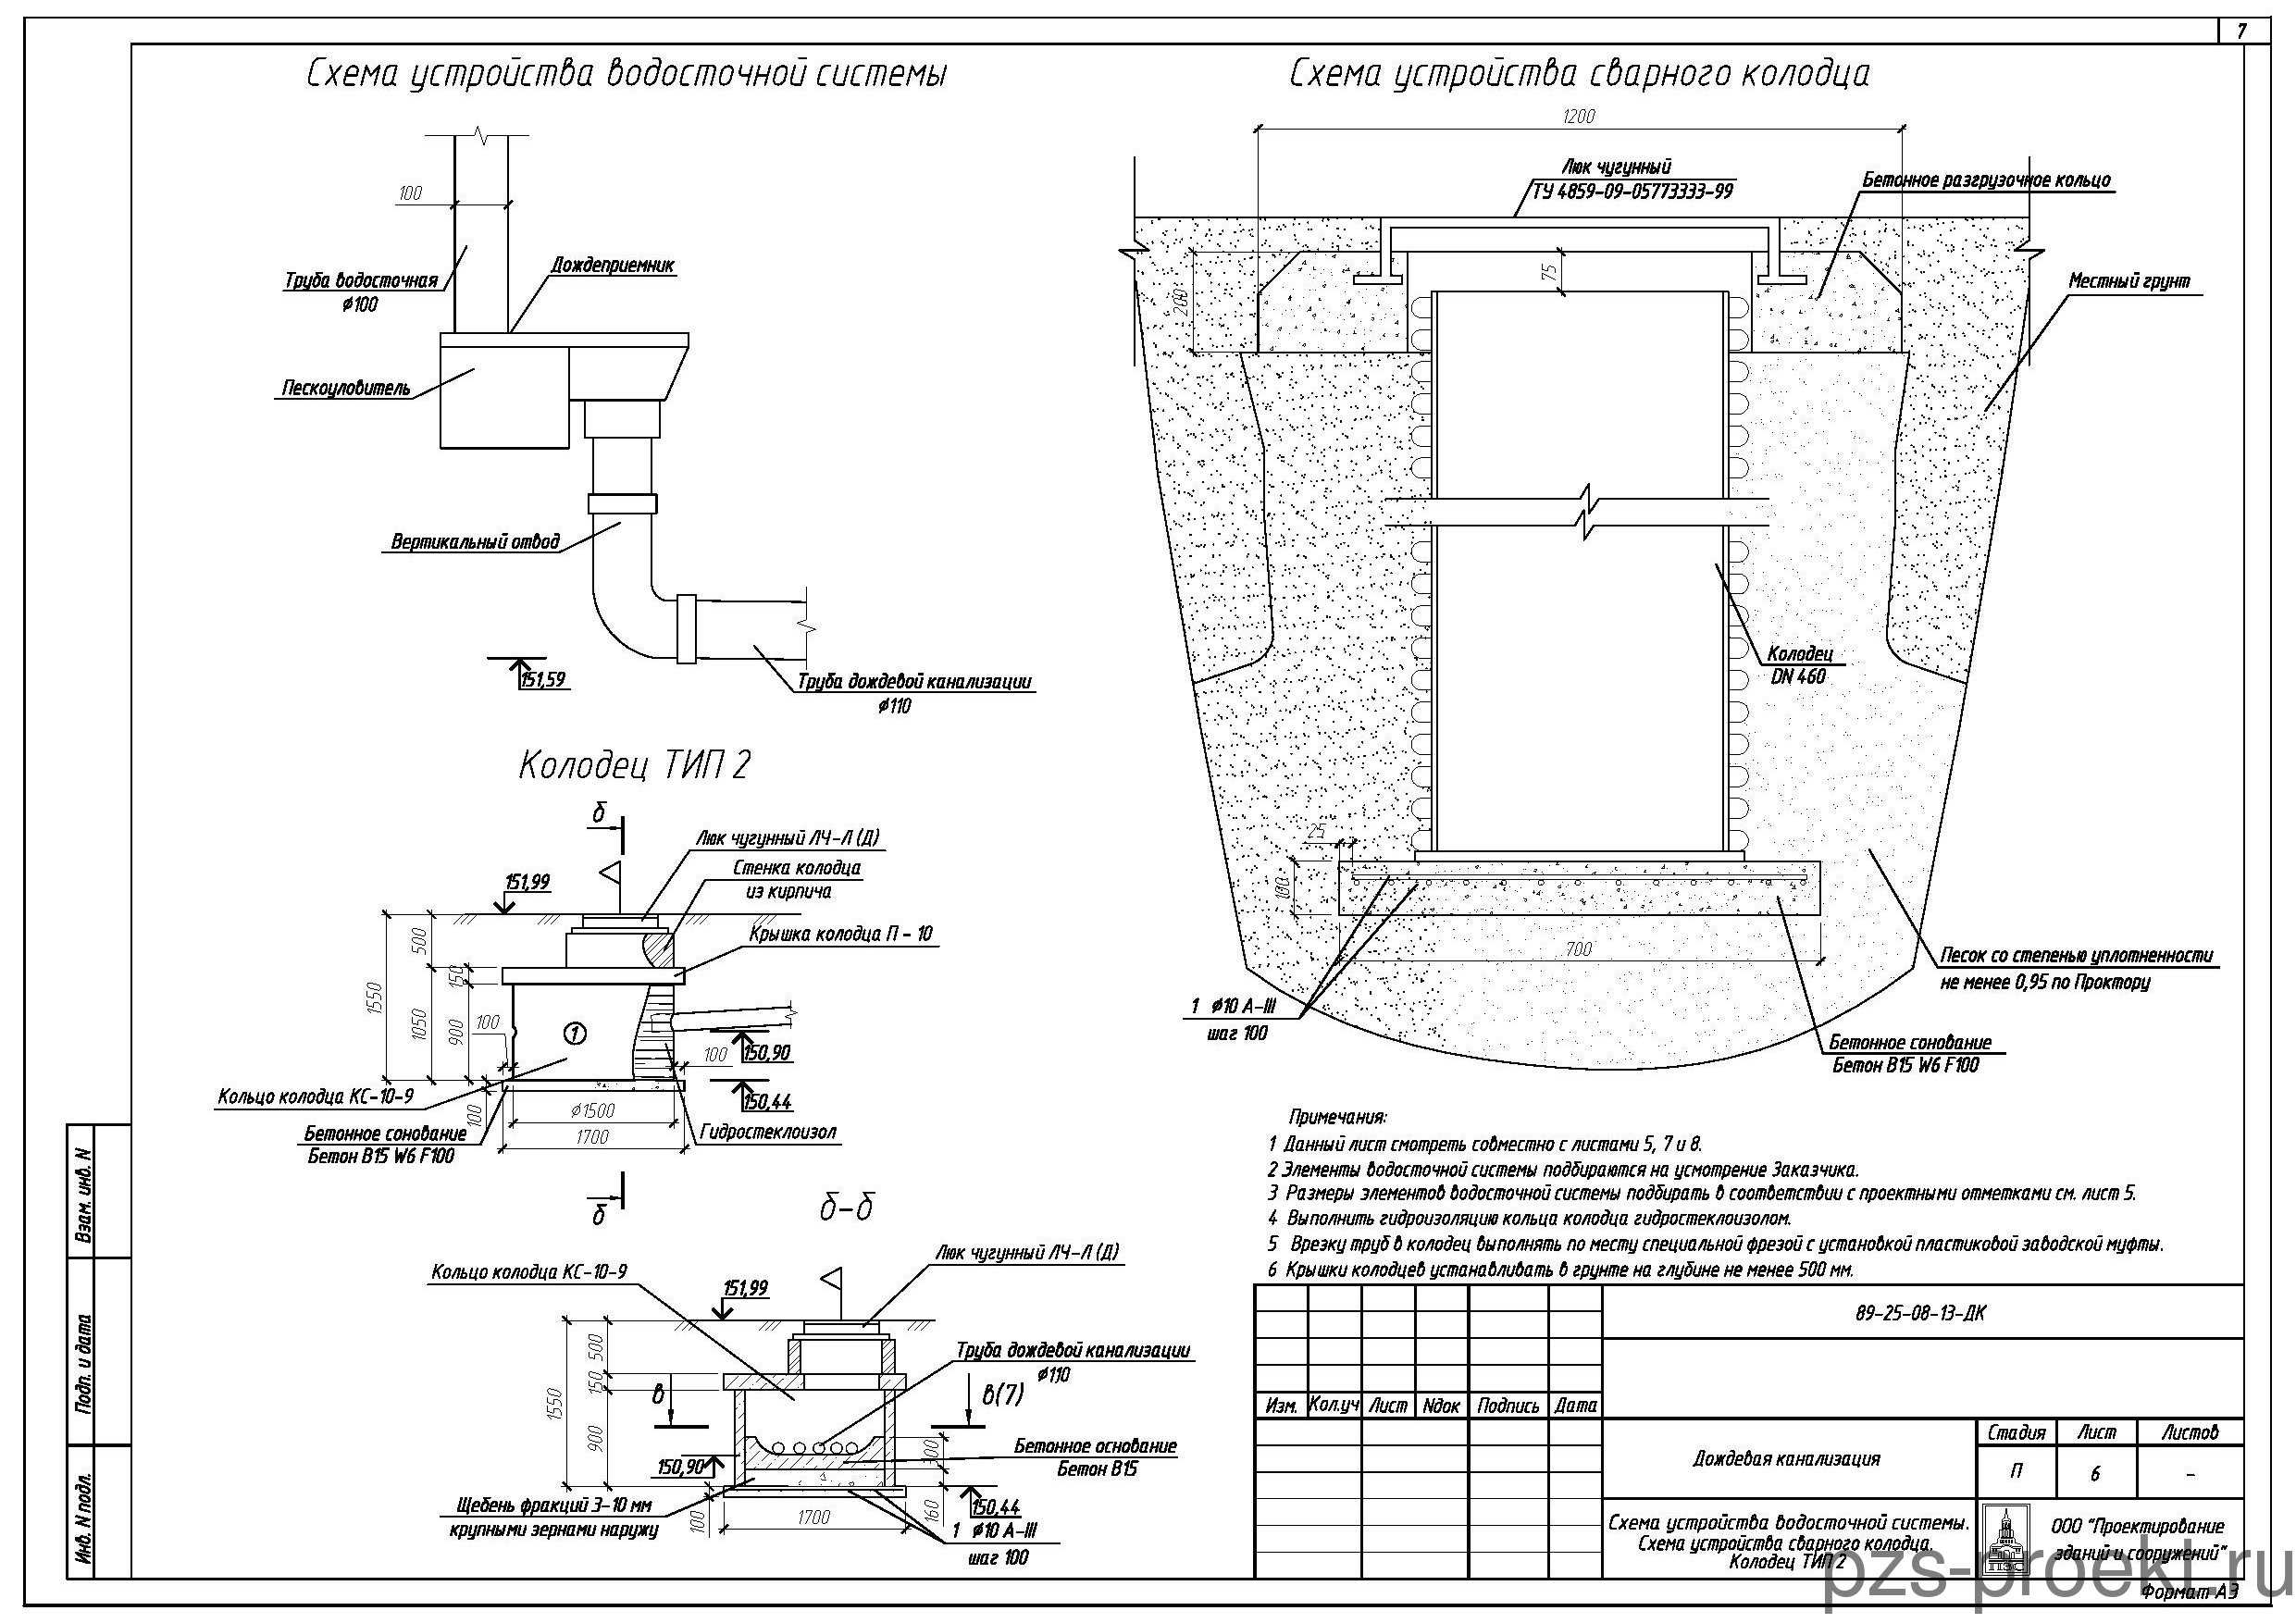 Канализационные колодцы: конструкция, виды (перепадные, поворотный), гидроизоляция